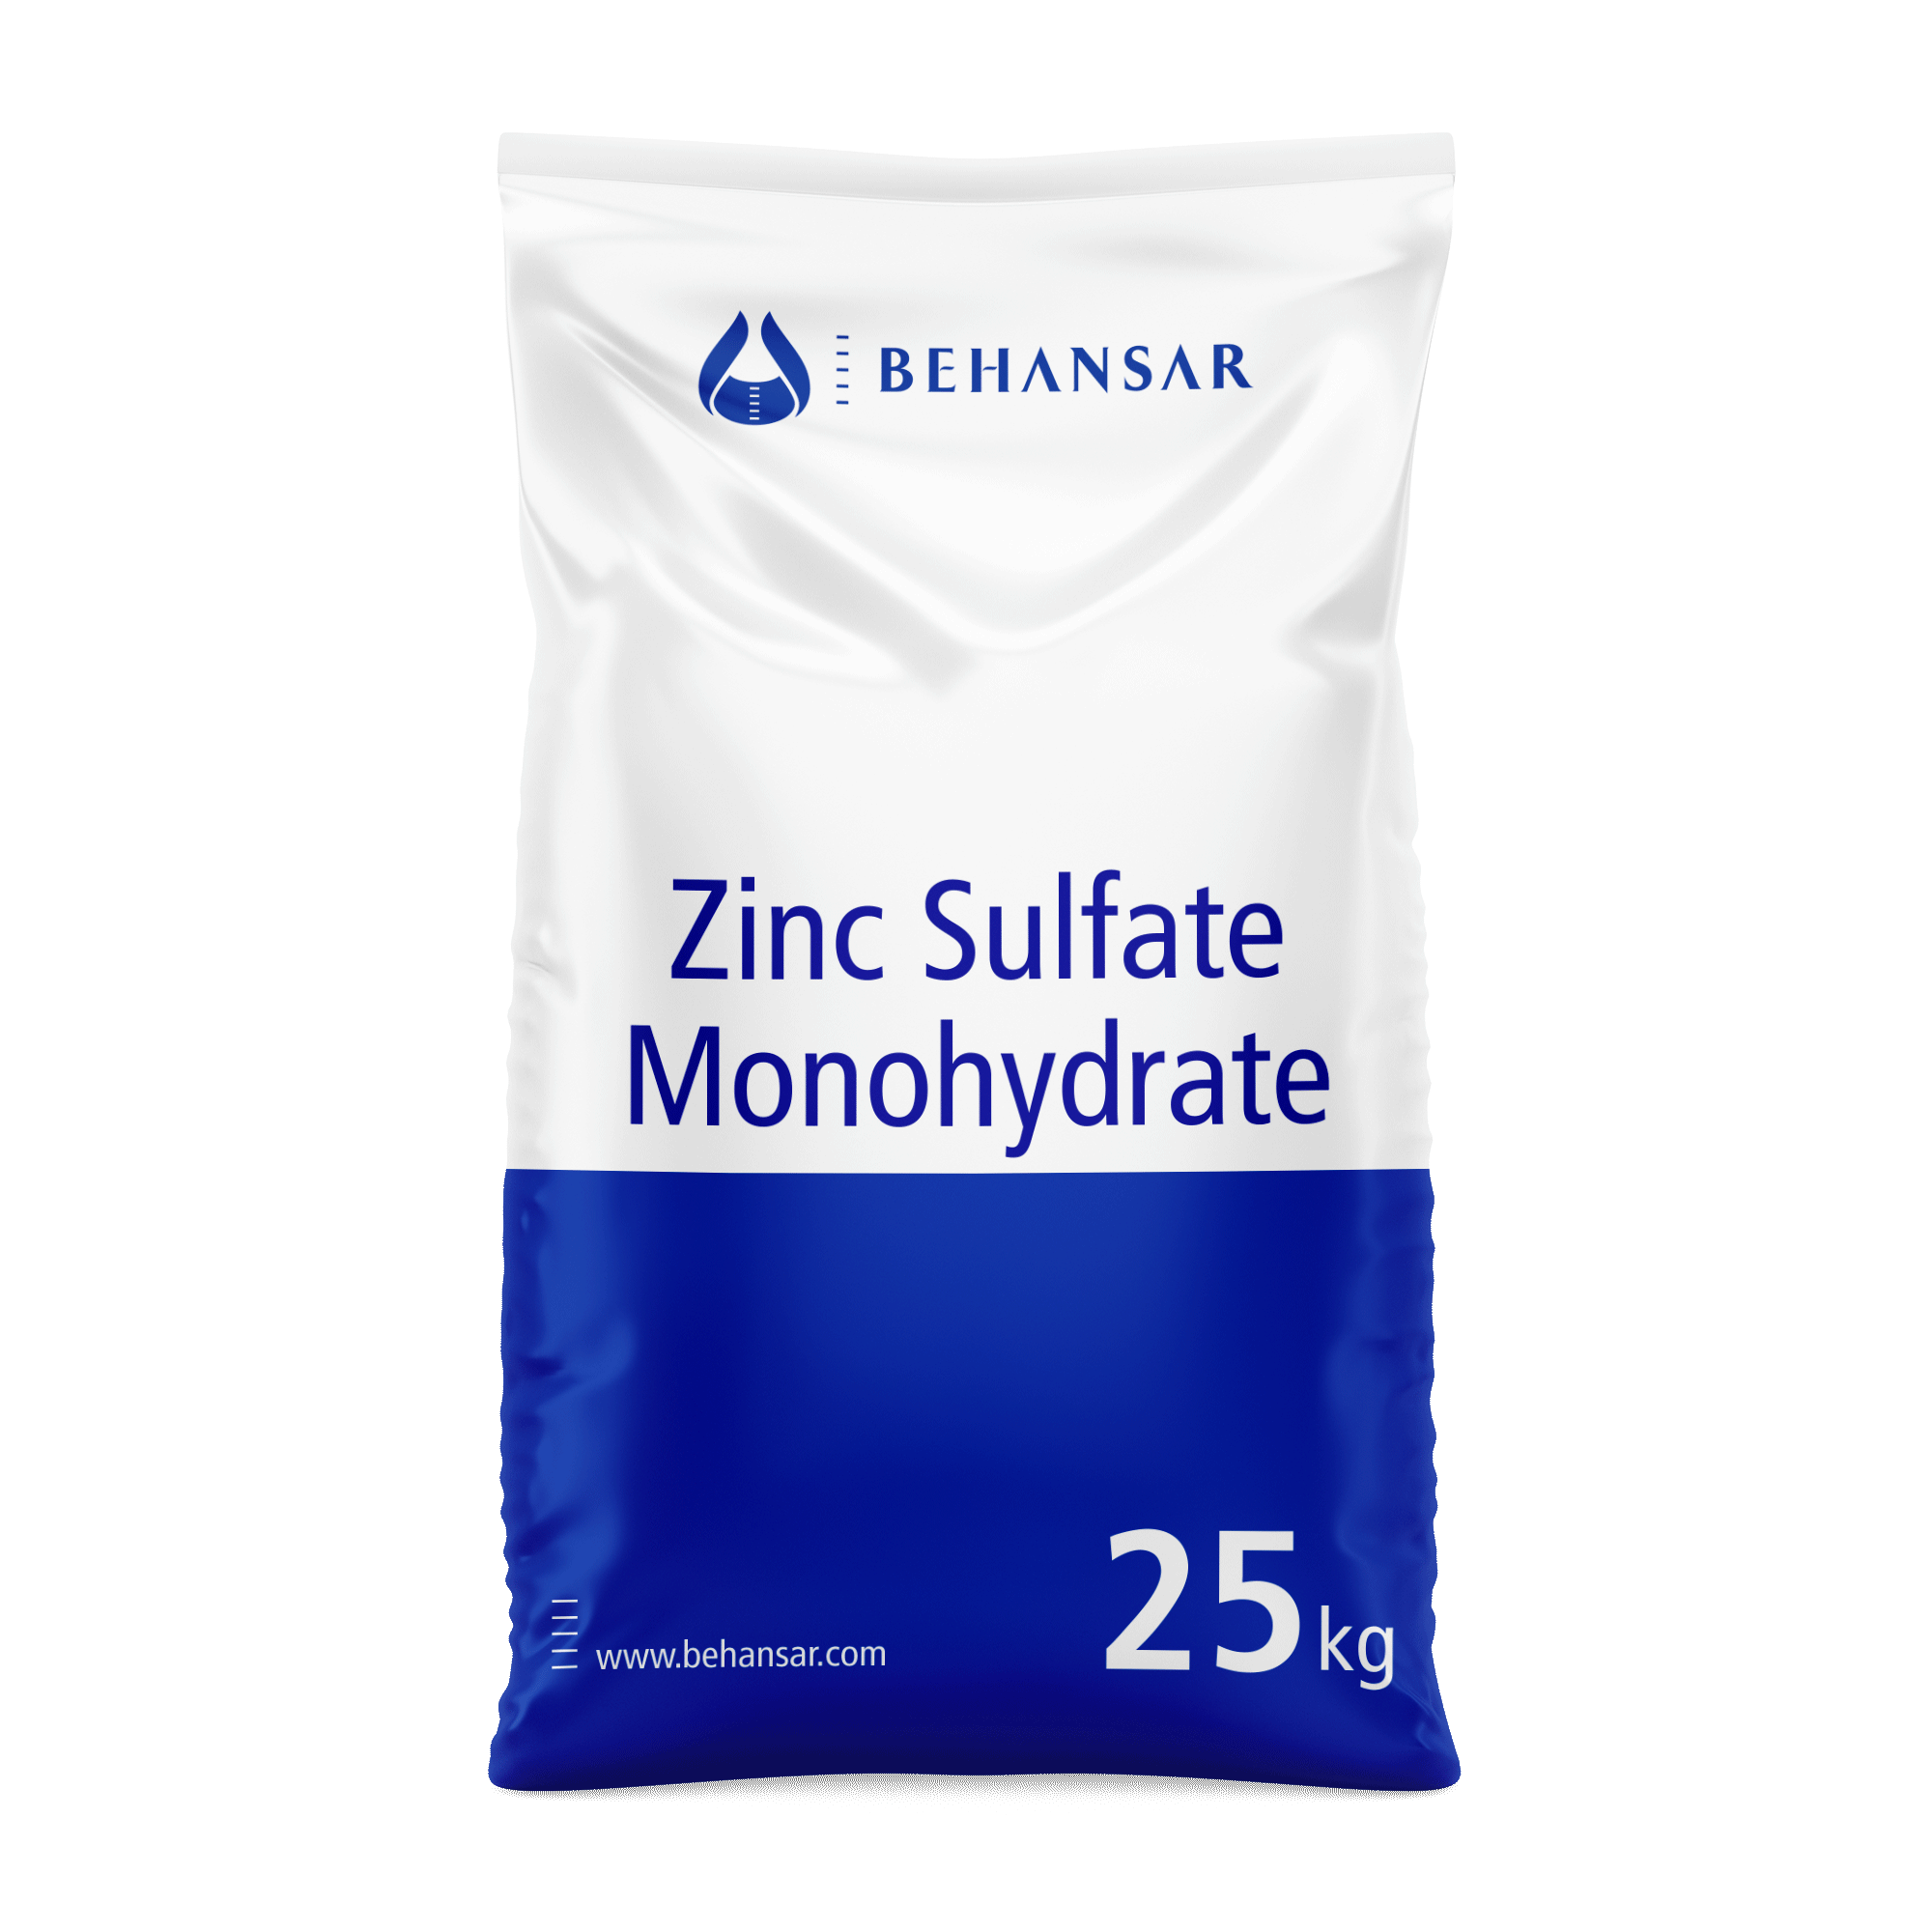 زینک سولفات مونو هیدرات یکی از تولیدات شرکت بهانسار است